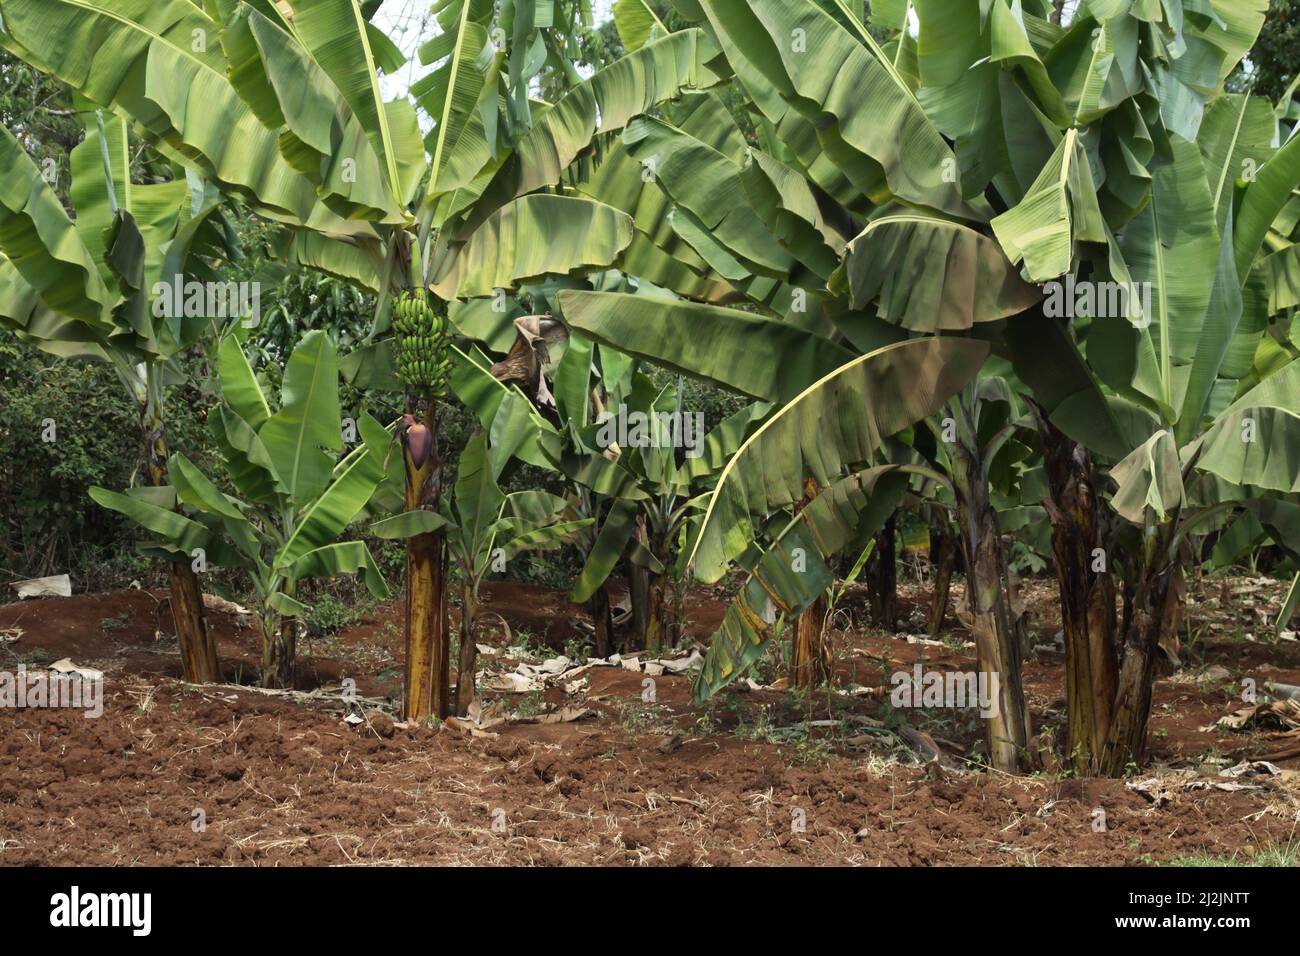 Banana trees (Musa acuminata x balbisiana) near Marangu, Tanzania Stock Photo